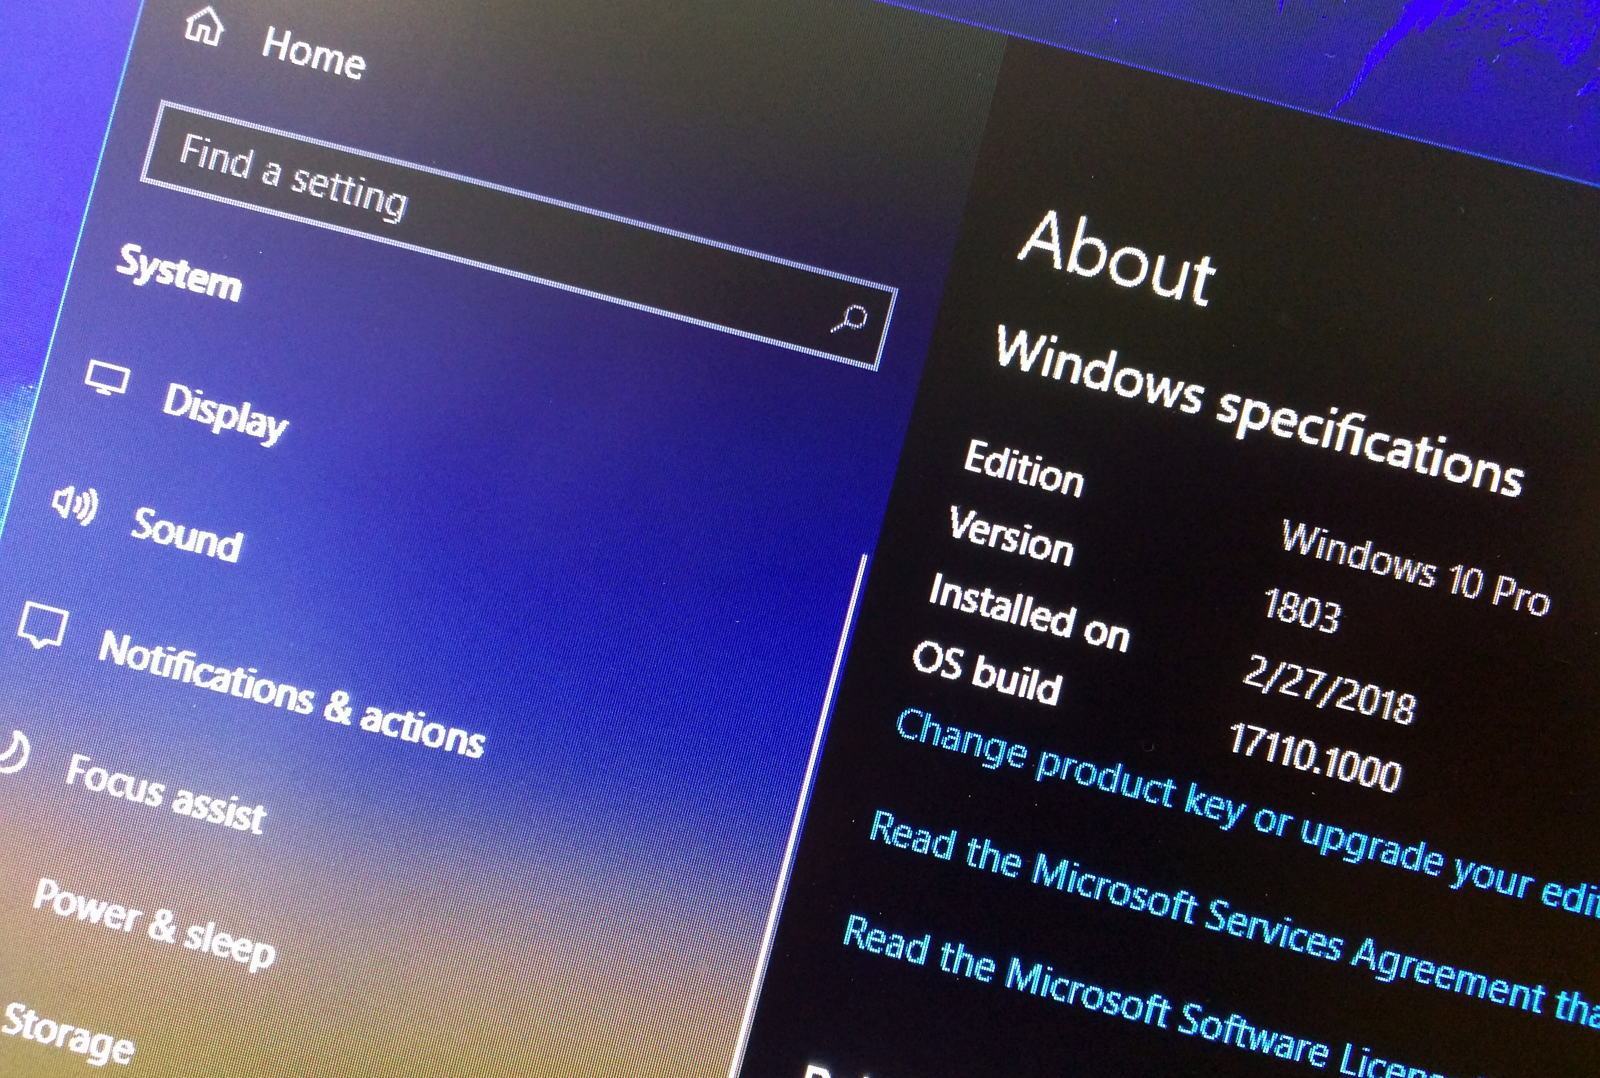 Windows 10 Version 1803 Update Stuck At 88